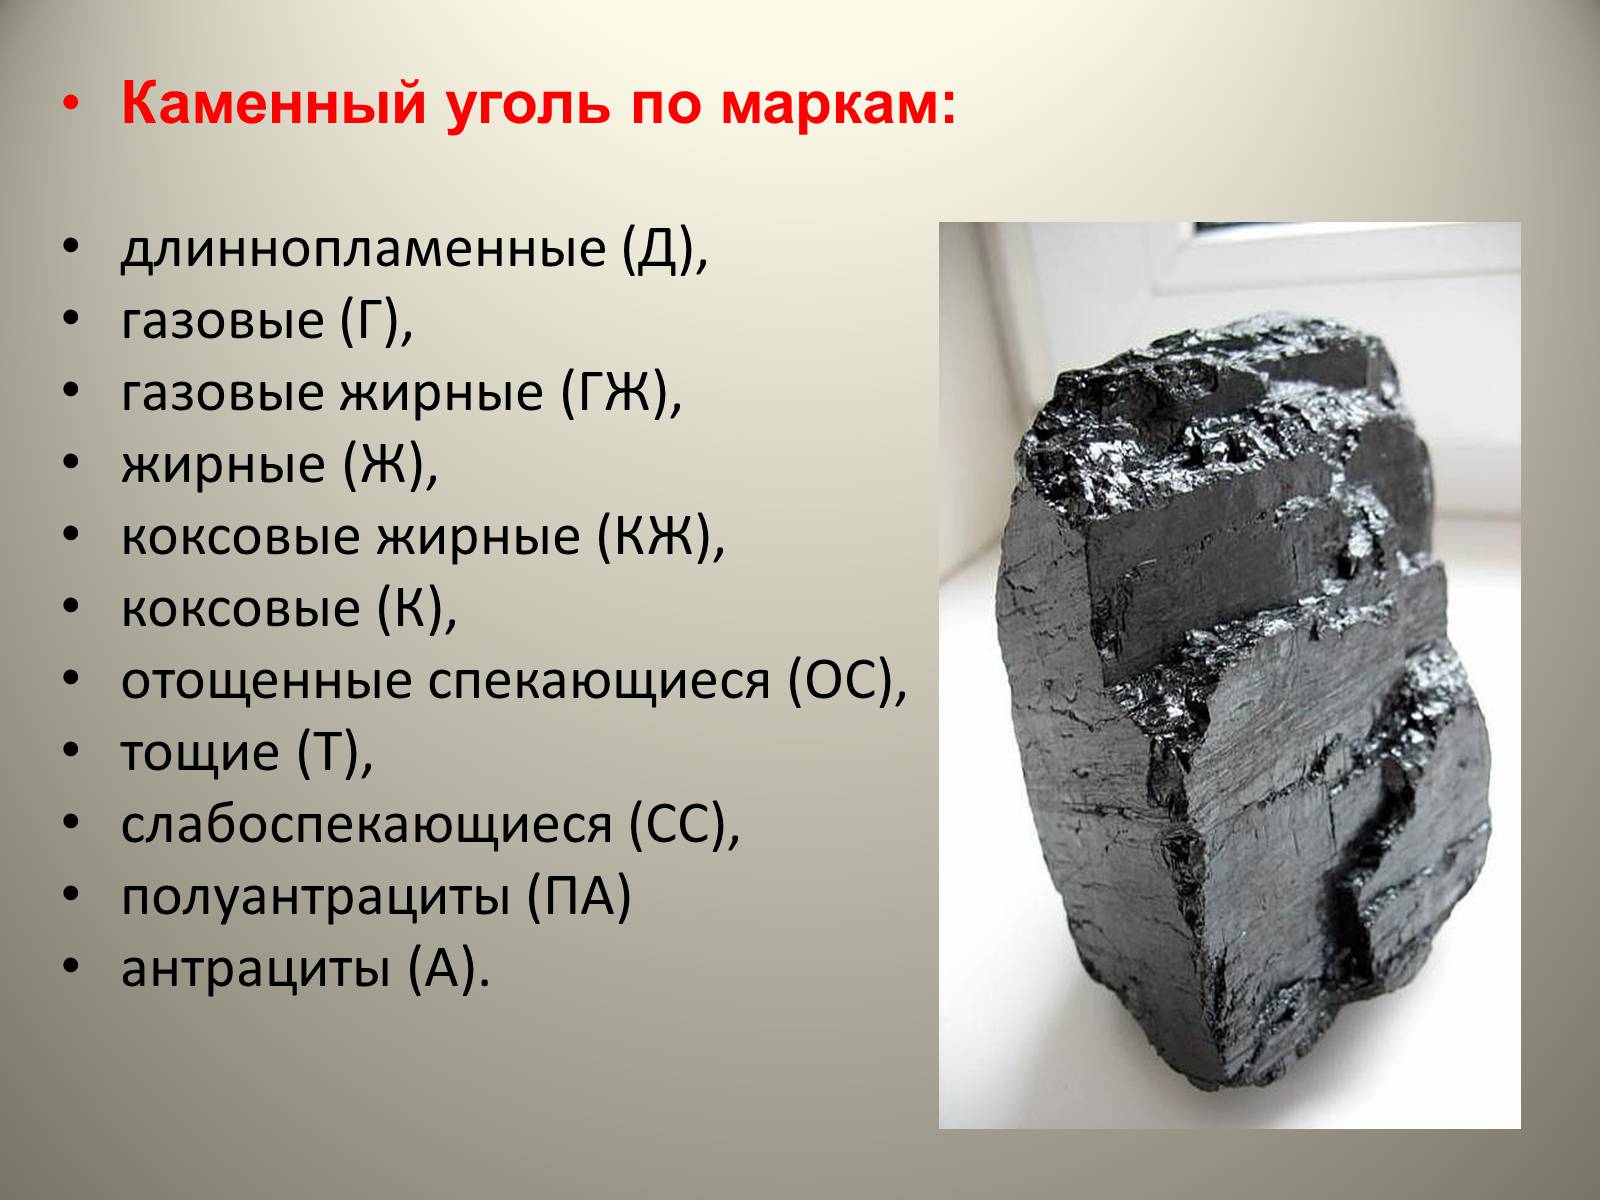 Каменный уголь вопросы. Каменный уголь презентация. Уголь для презентации. Проект каменный уголь. Сведения о Каменном угле.